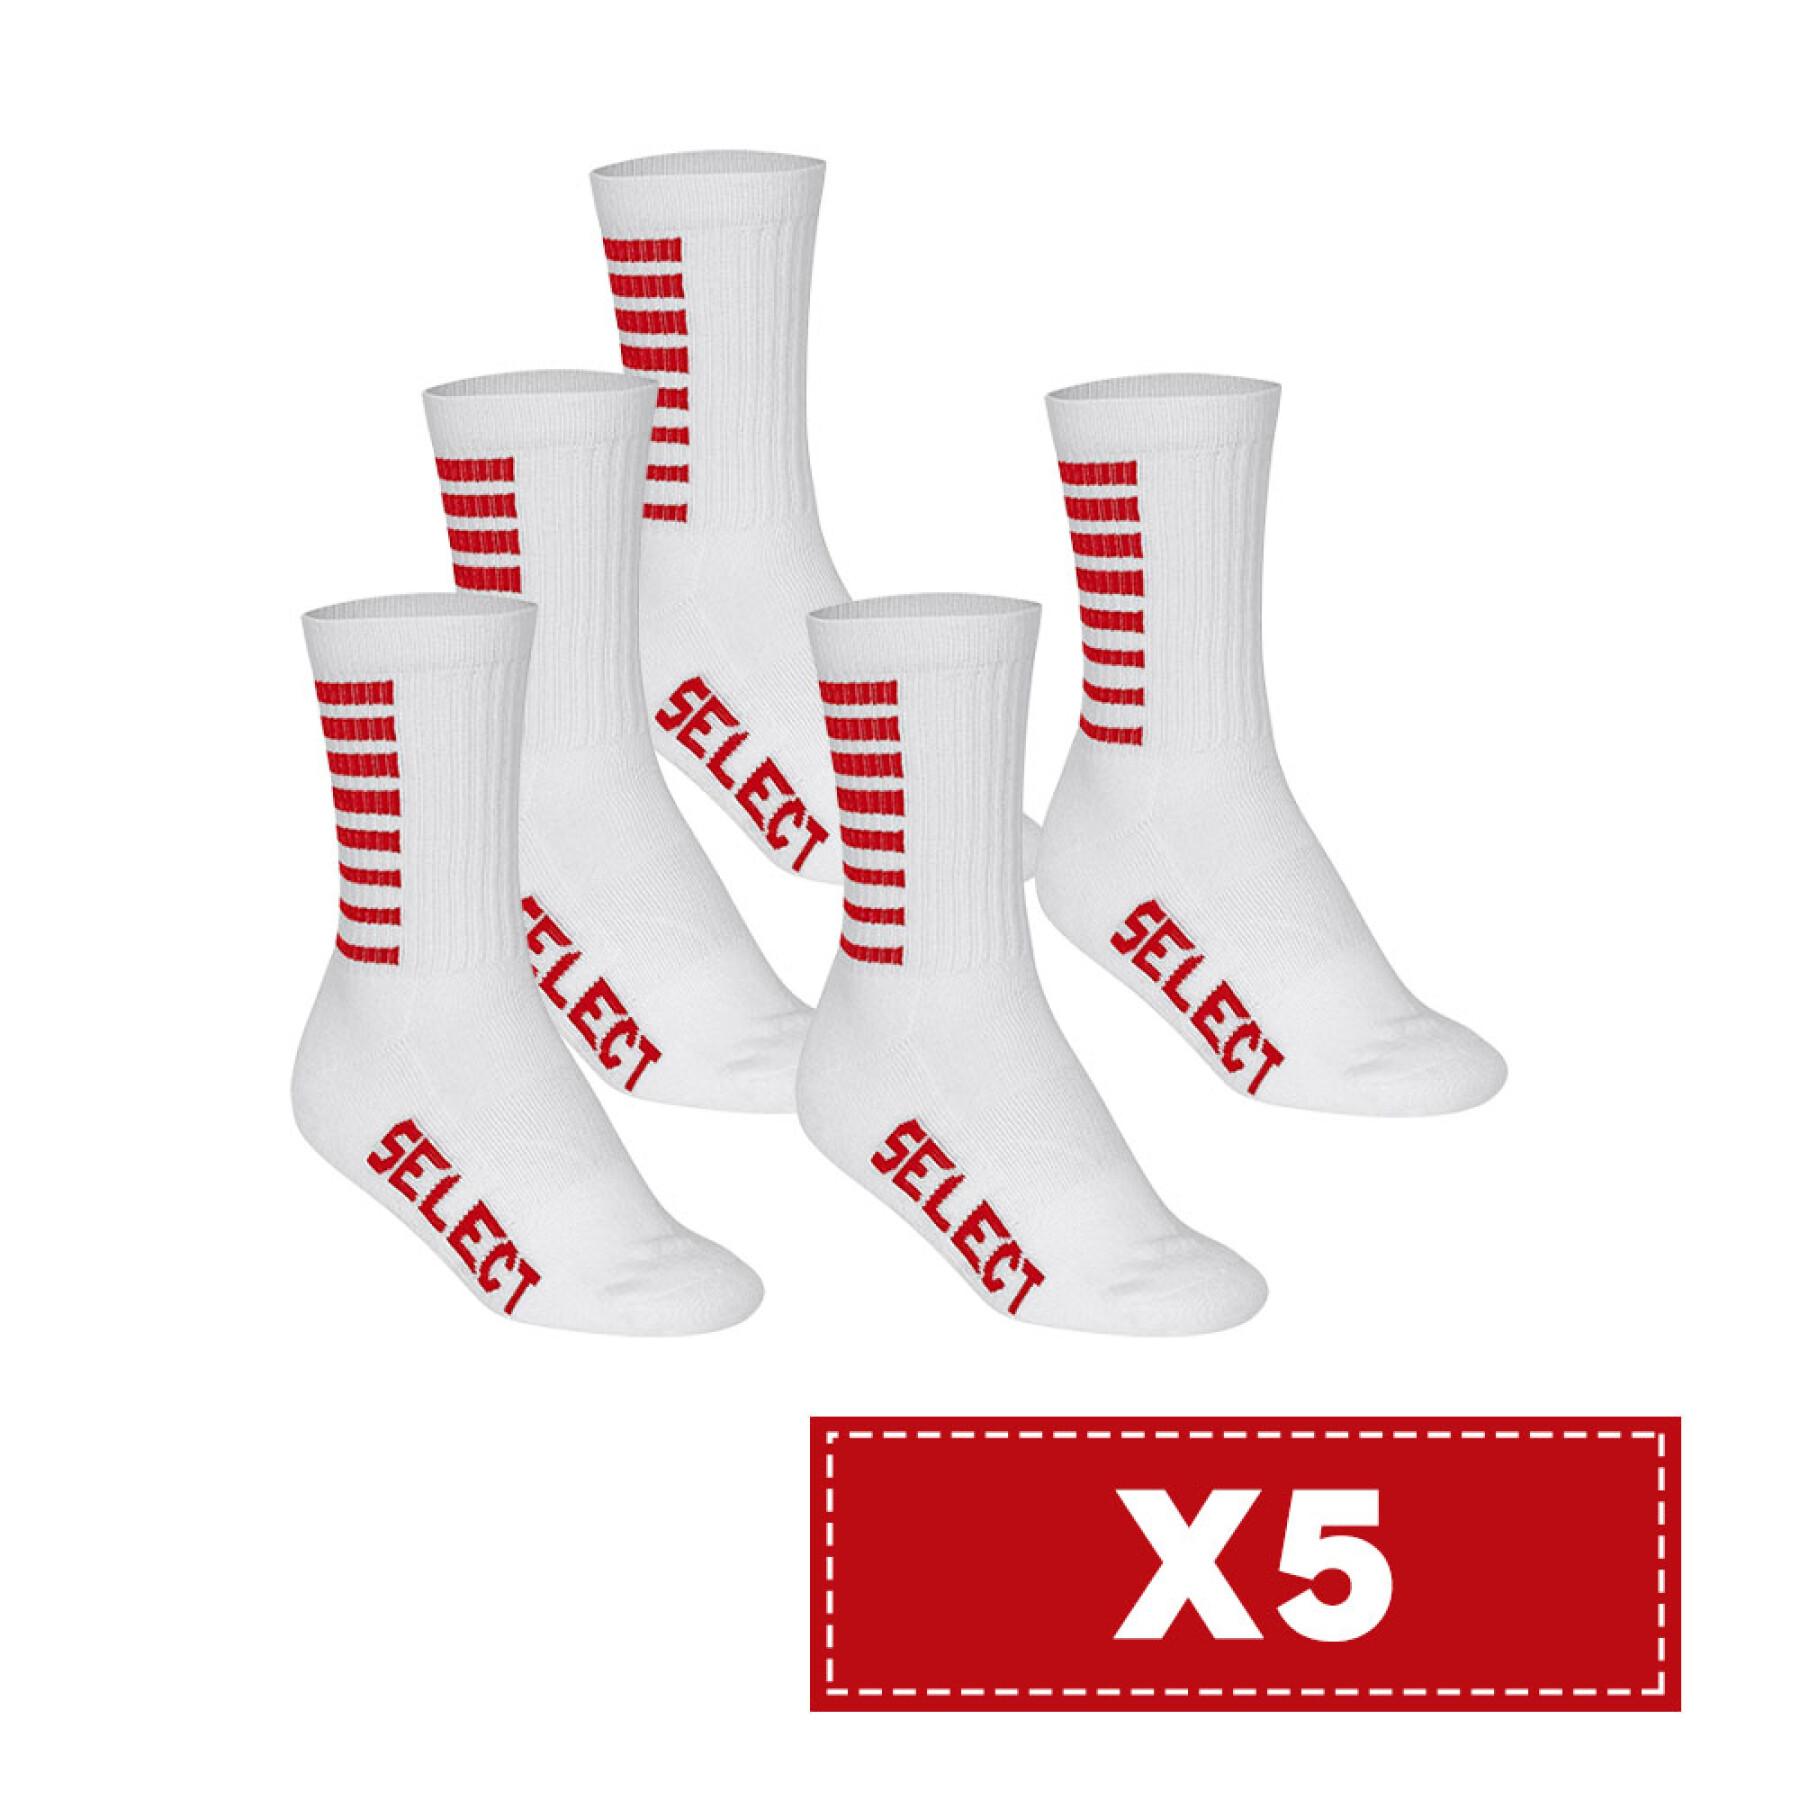 Paquete de 10 pares de calcetines Select Basic